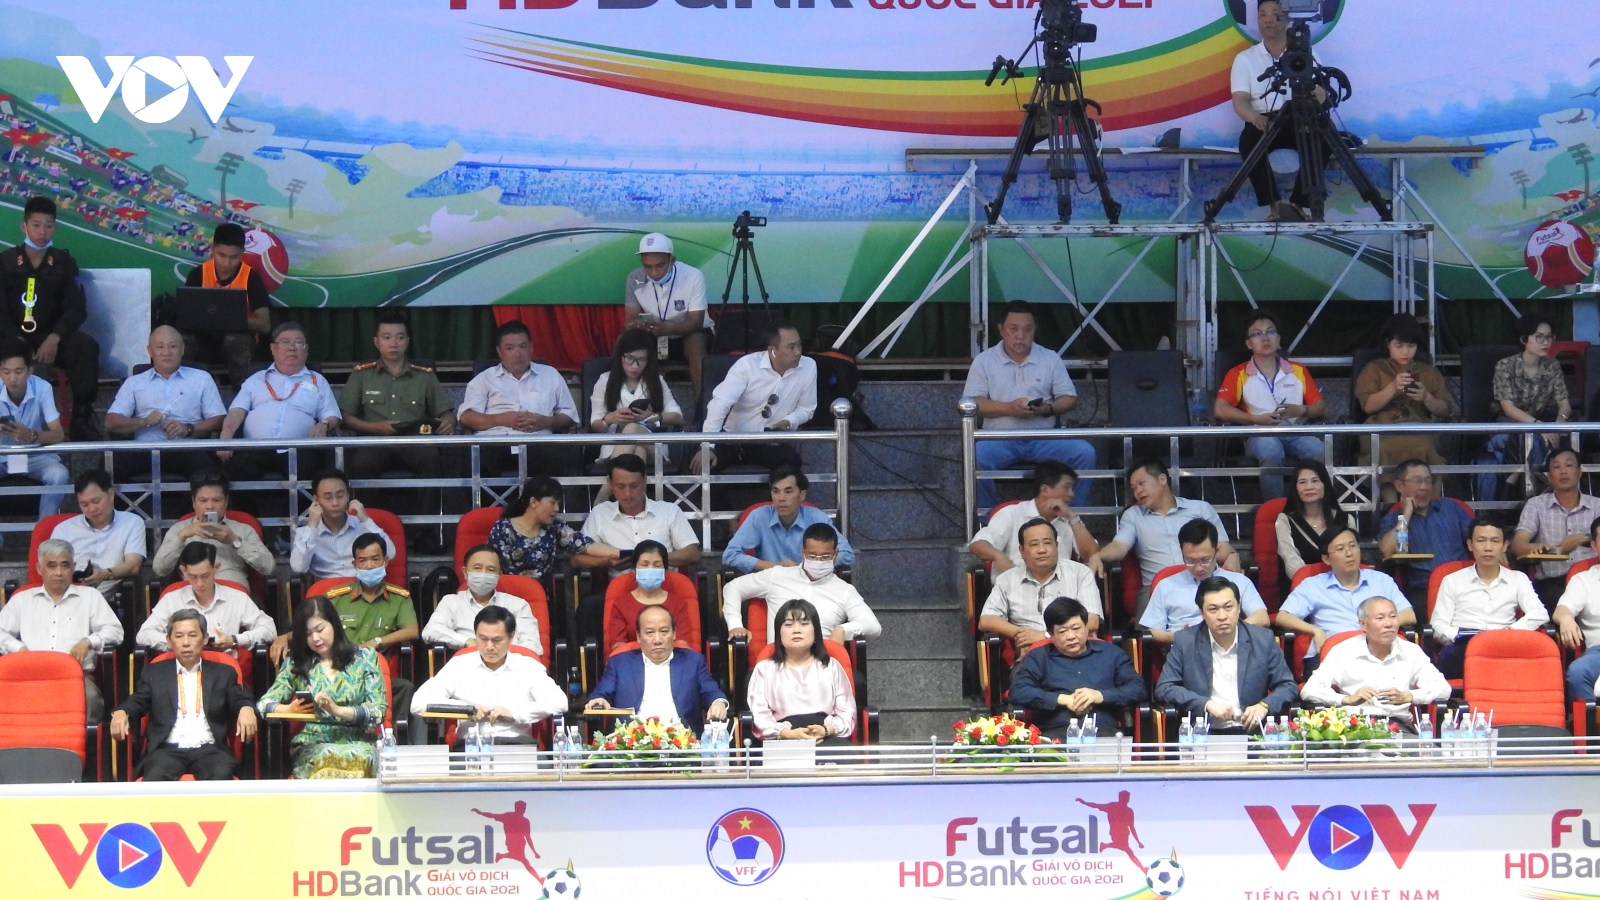 Khai mạc Giải Futsal HDBank VĐQG 2021 tại Đắk Lắk